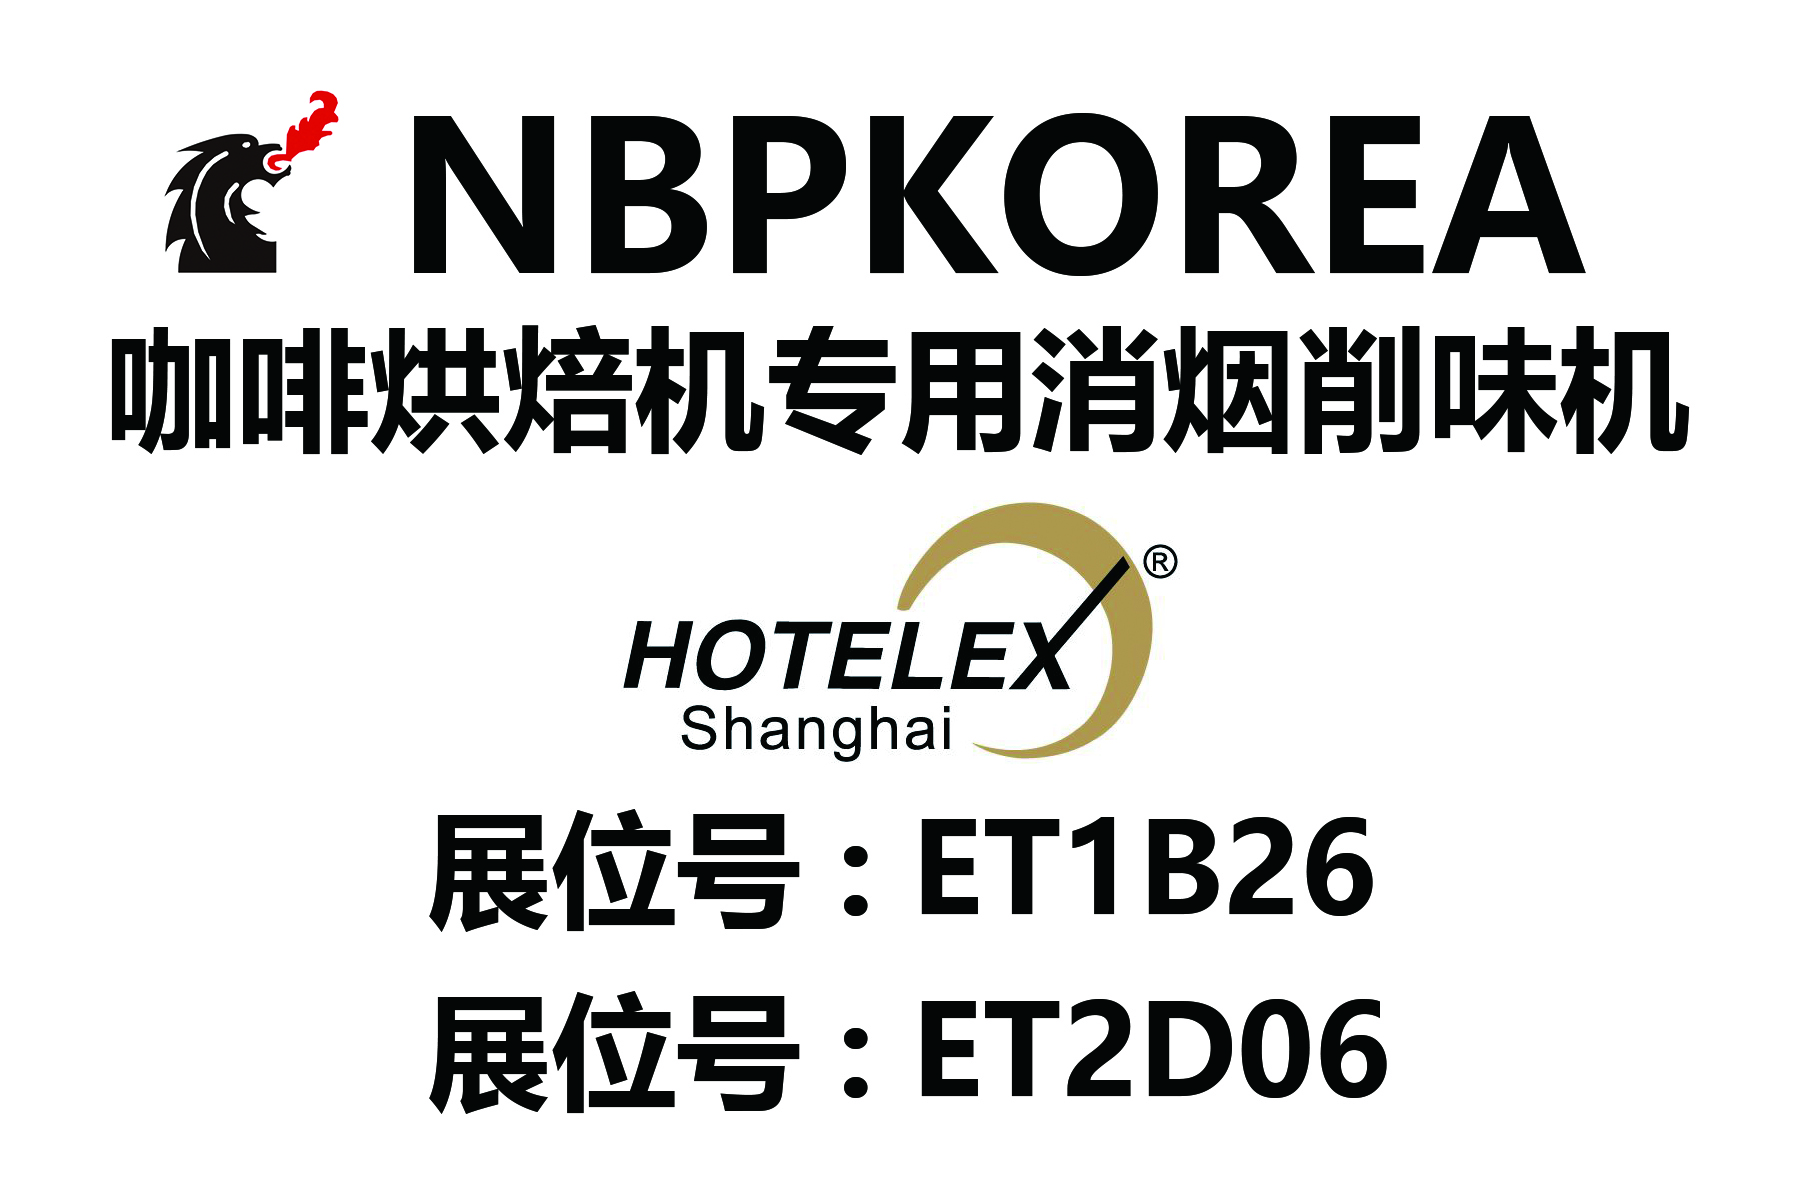 本次2019 HOTELEX 上海站展会上有2家经销商展出了NBPKOREA消烟消味机产品 展位是，ET2D06（富士皇家中国总公司），ET1B26（罗斯泰克）